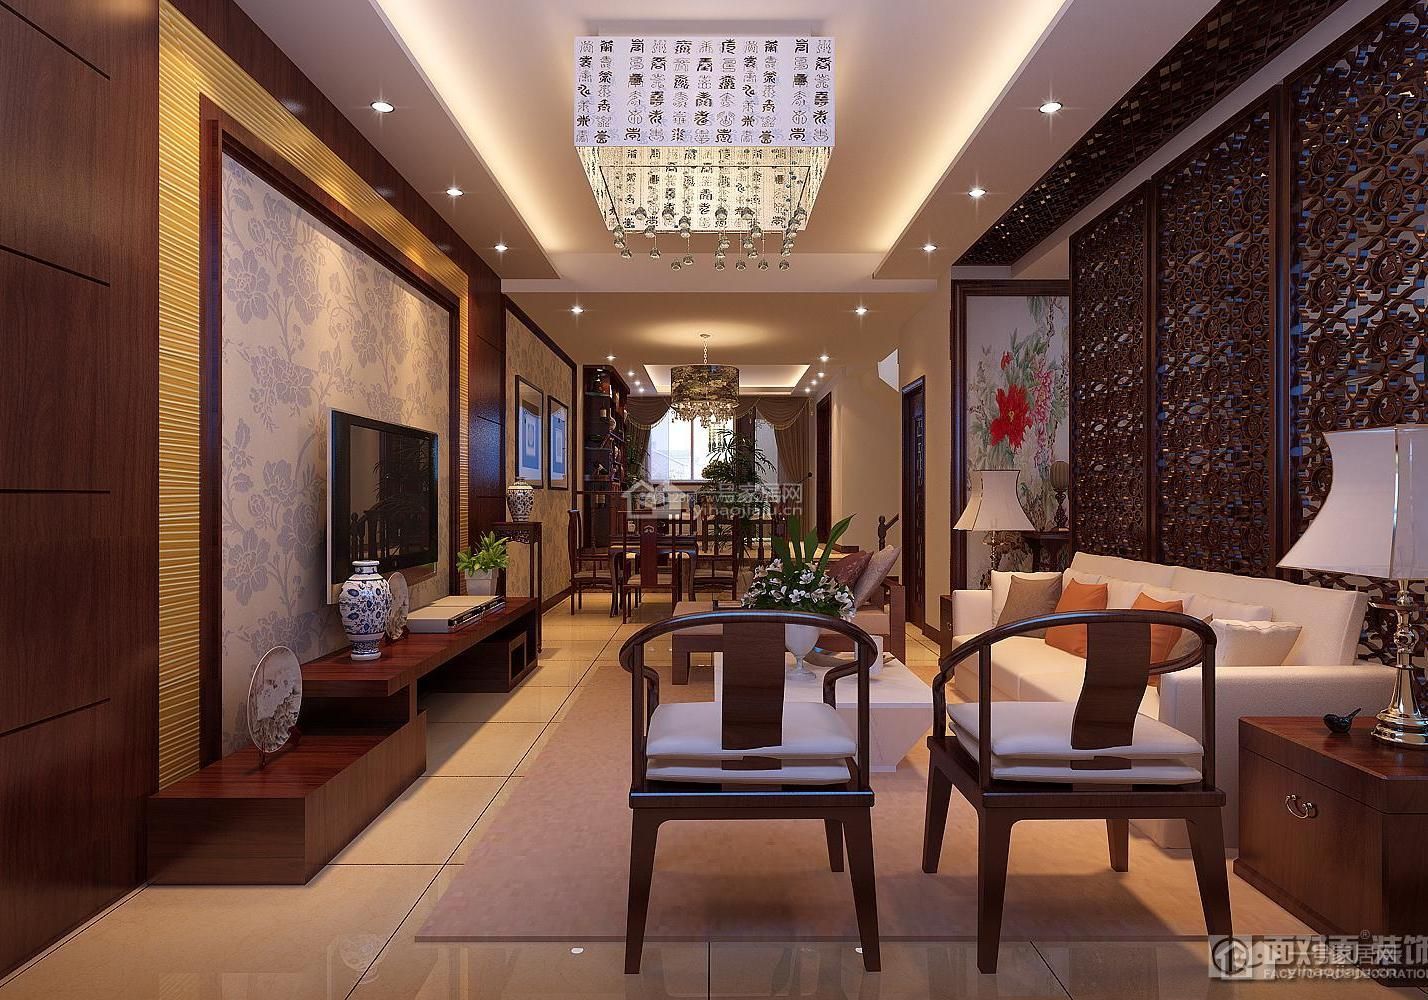 新中式风格 长方形客厅 室内吊顶